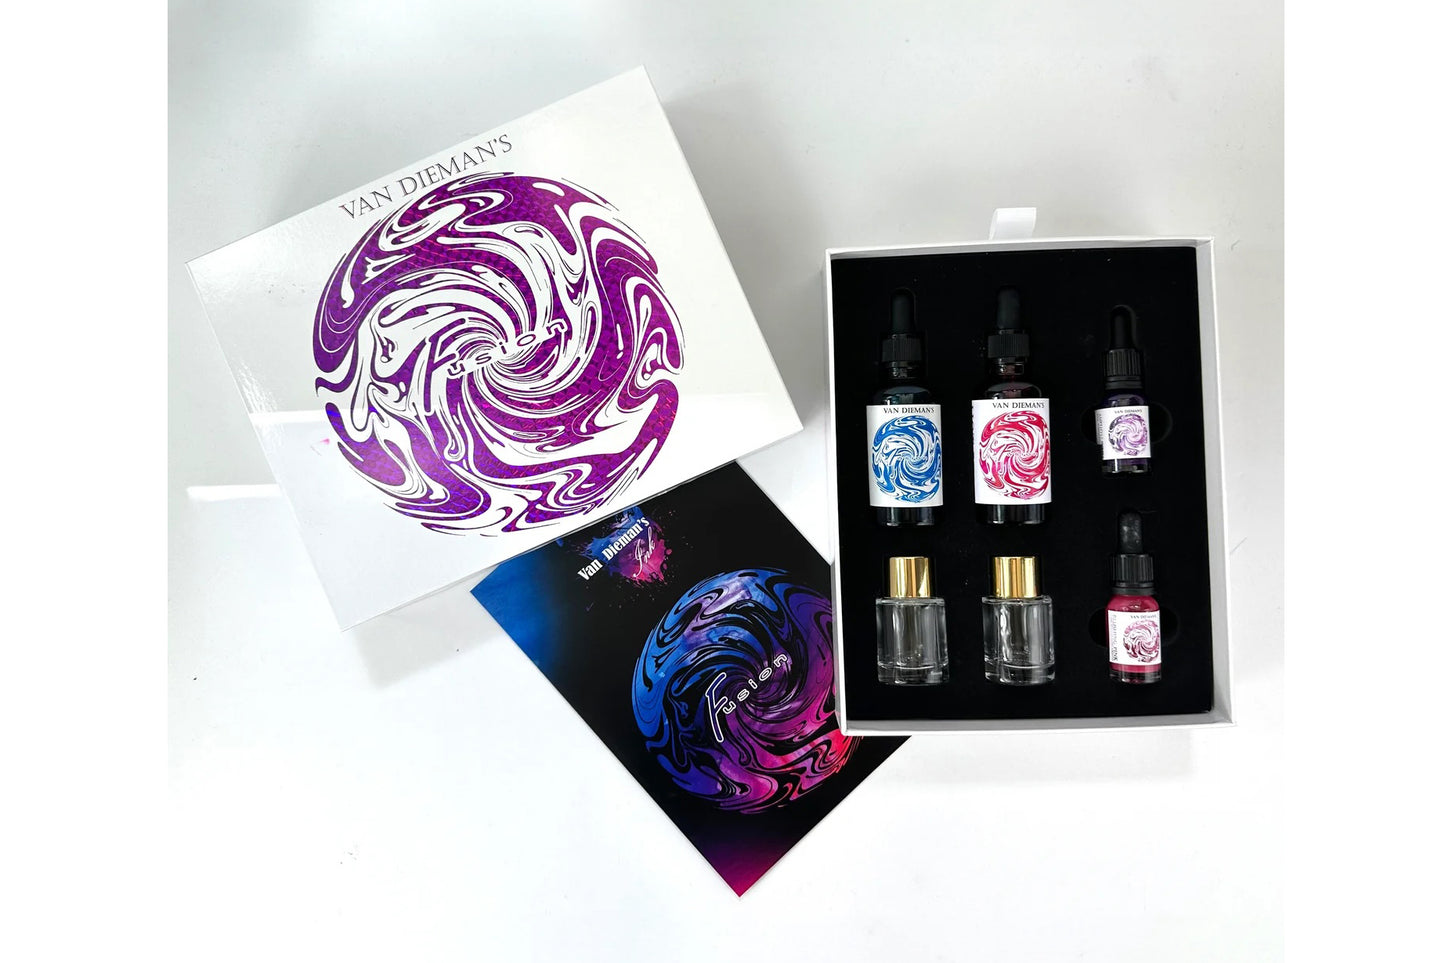 Van Dieman's Ink Fusion Ink Mixing Kit - Purple | Flywheel | Stationery | Tasmania